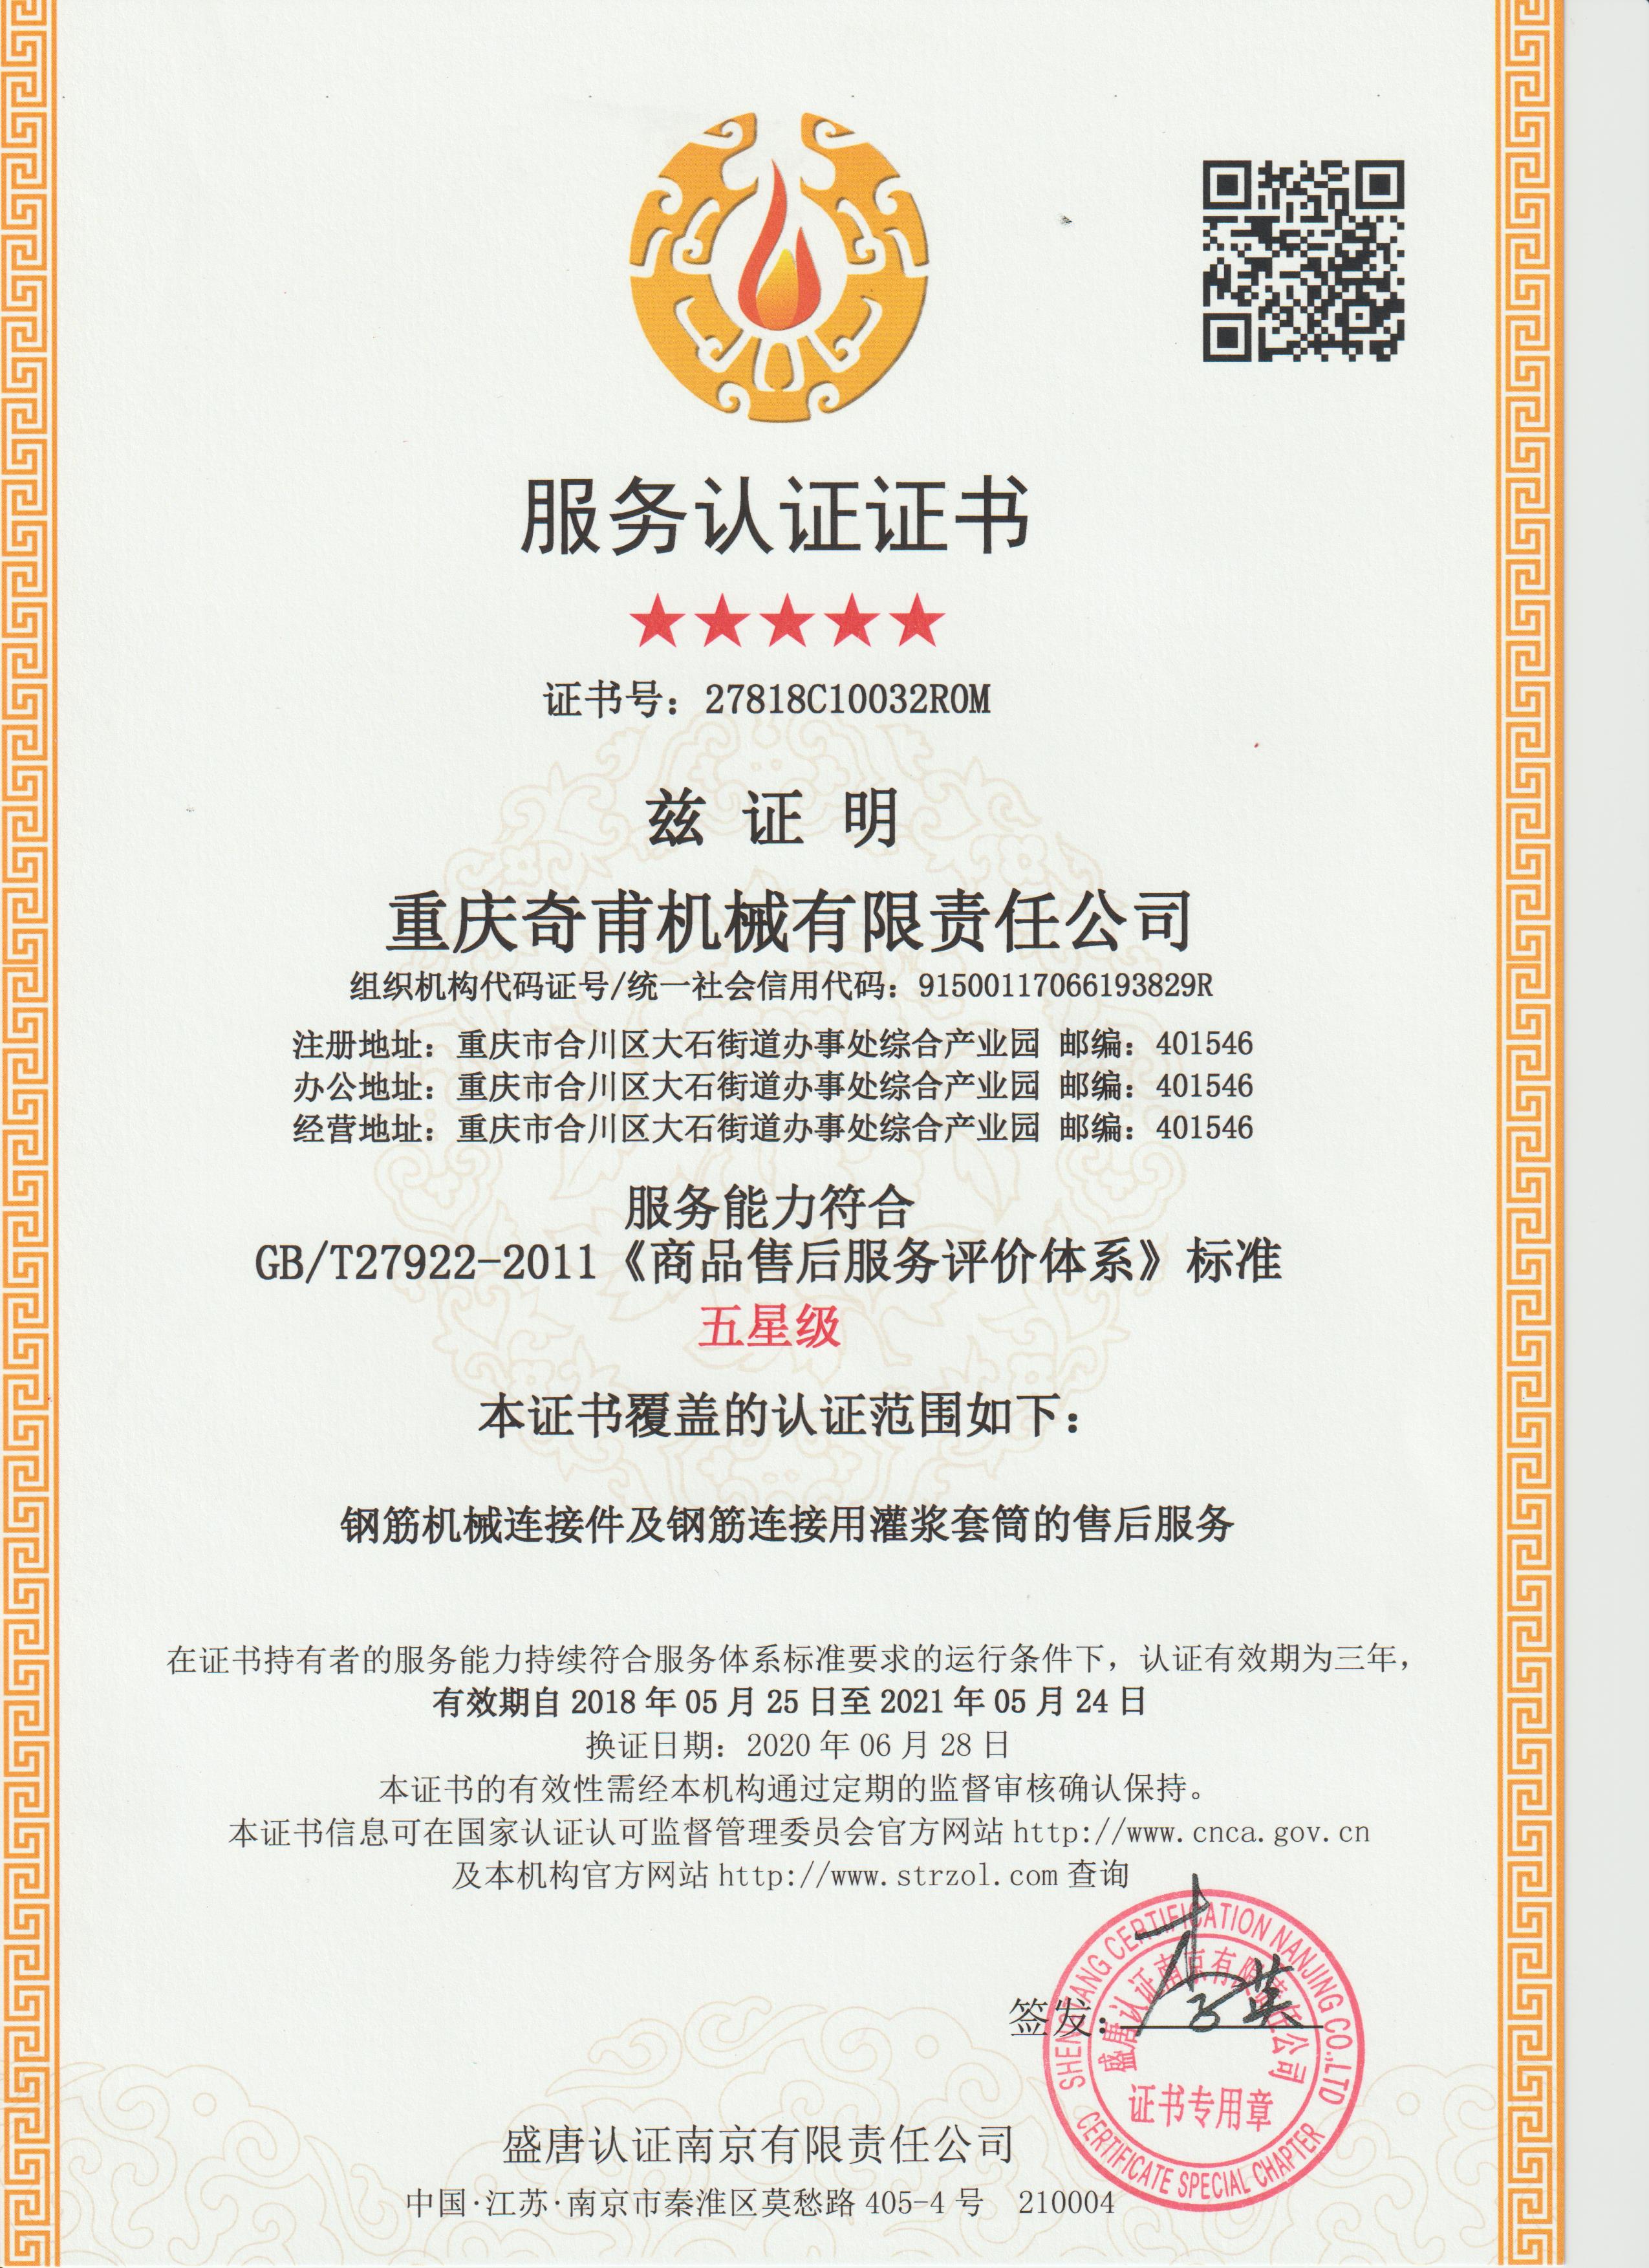 商品售后服务评价体系证书——中文版